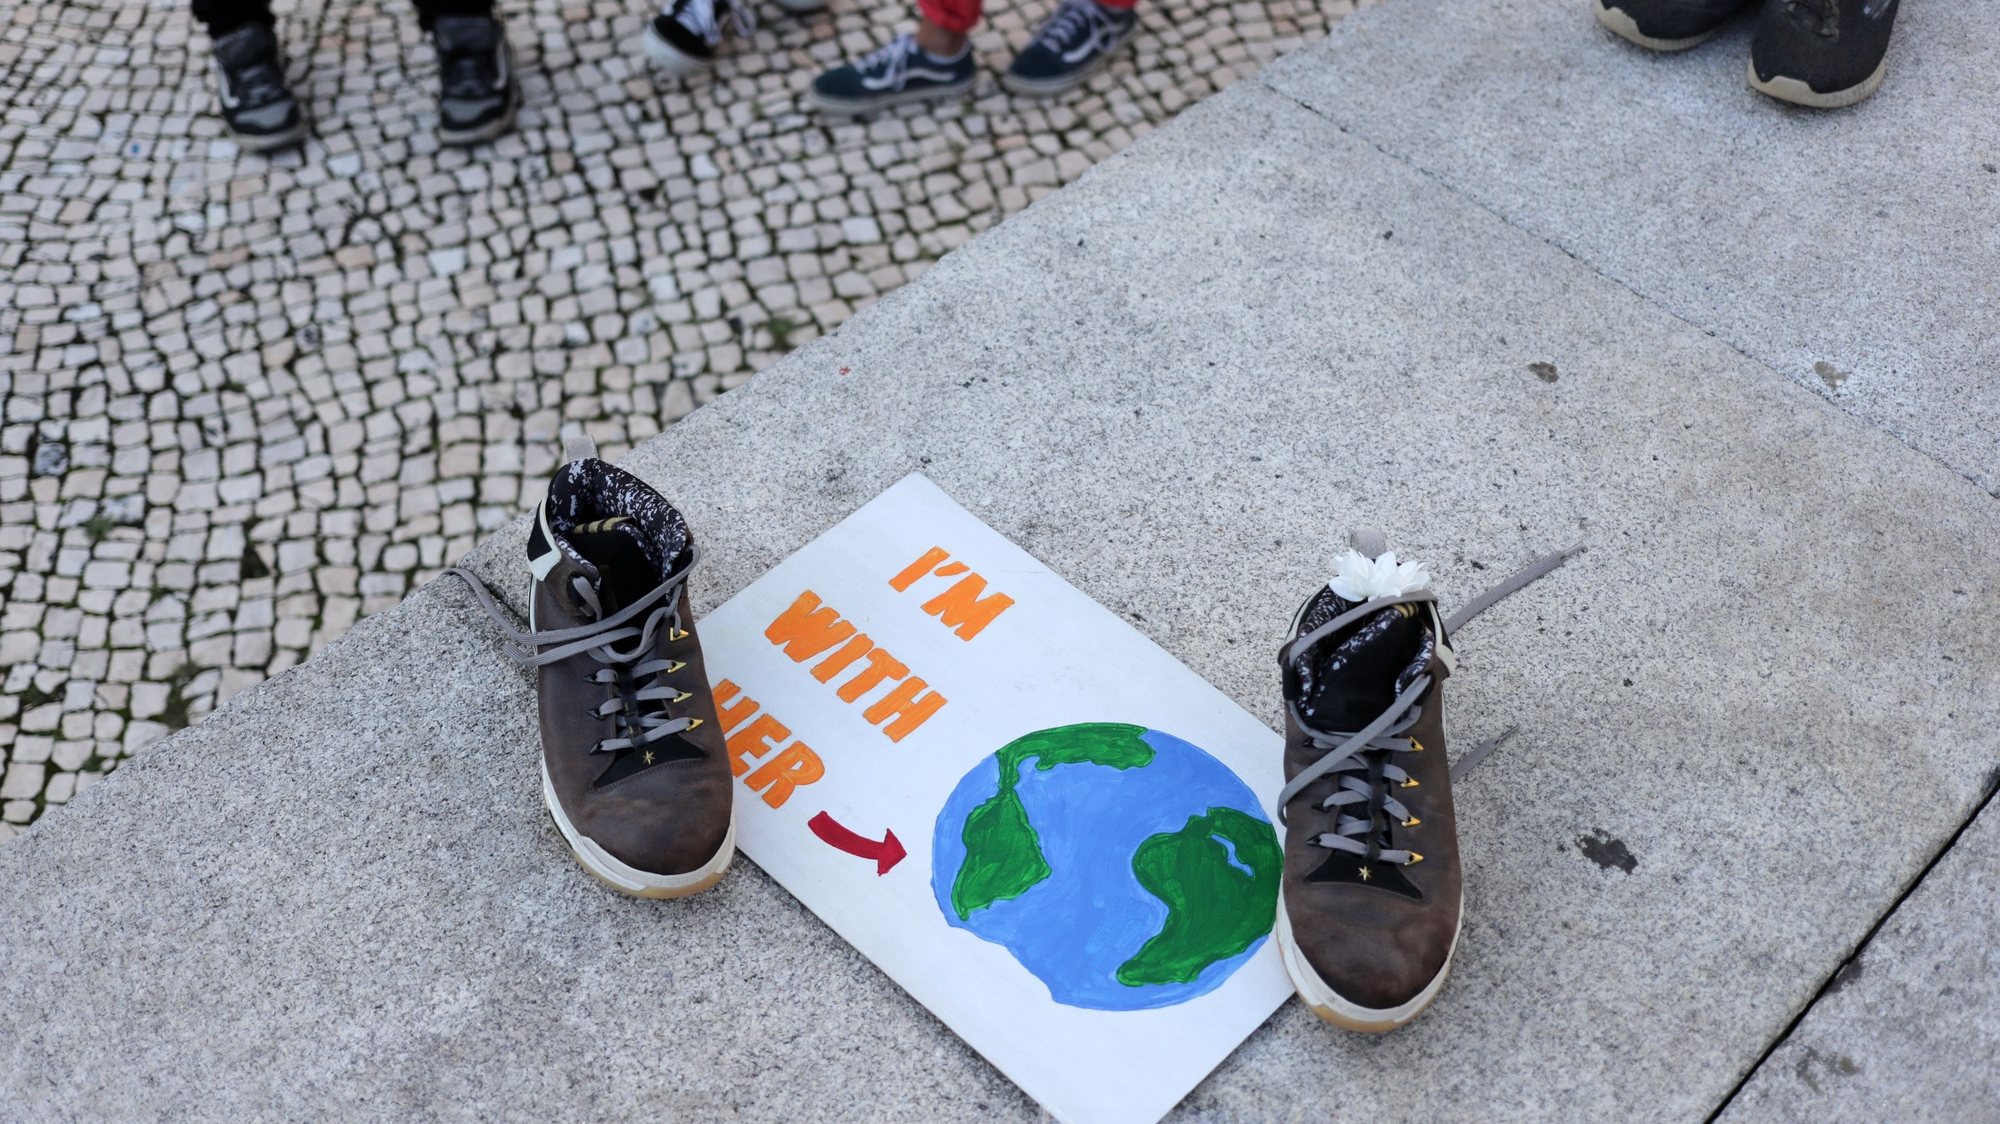 Manifestação Climática Global organizada pelo movimento Salvar o Clima, na sequência da iniciativa internacional liderada pela ativista sueca Greta Thunberg destinada a exigir medidas ambientais em defesa do planeta, no Porto, 25 de setembro de 2020. ESTELA SILVA/LUSA